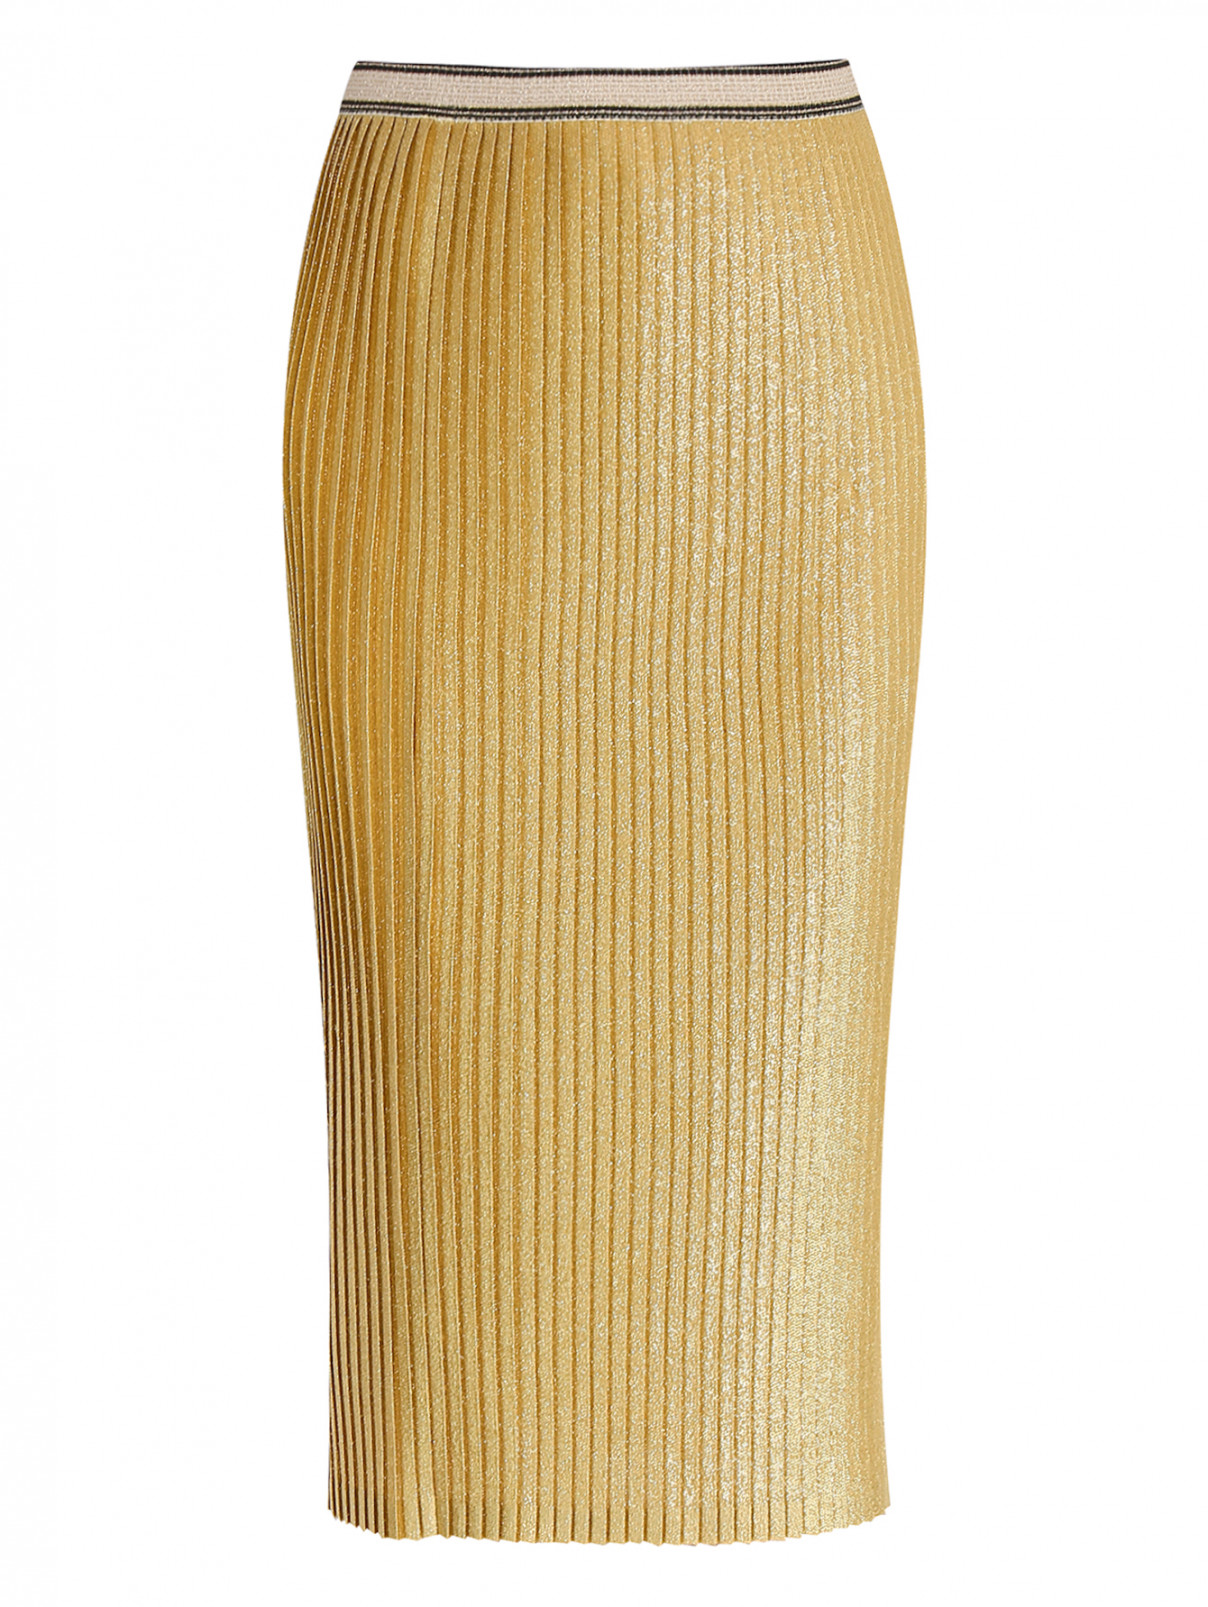 Юбка плиссированная с металлической нитью By Malene Birger  –  Общий вид  – Цвет:  Золотой